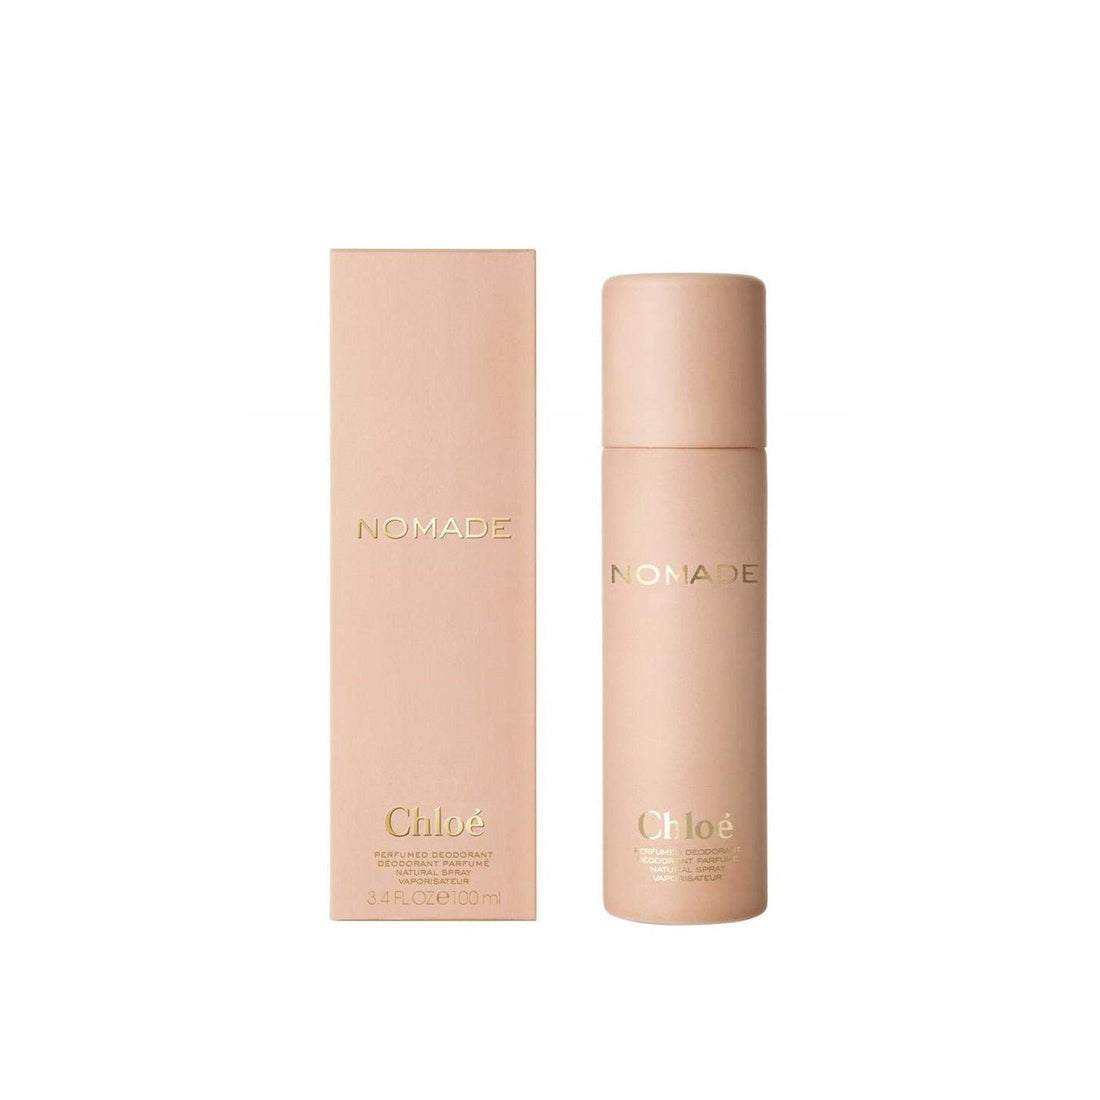 Chloé Nomade Desodorante Perfumado 100ml (3.38fl oz)